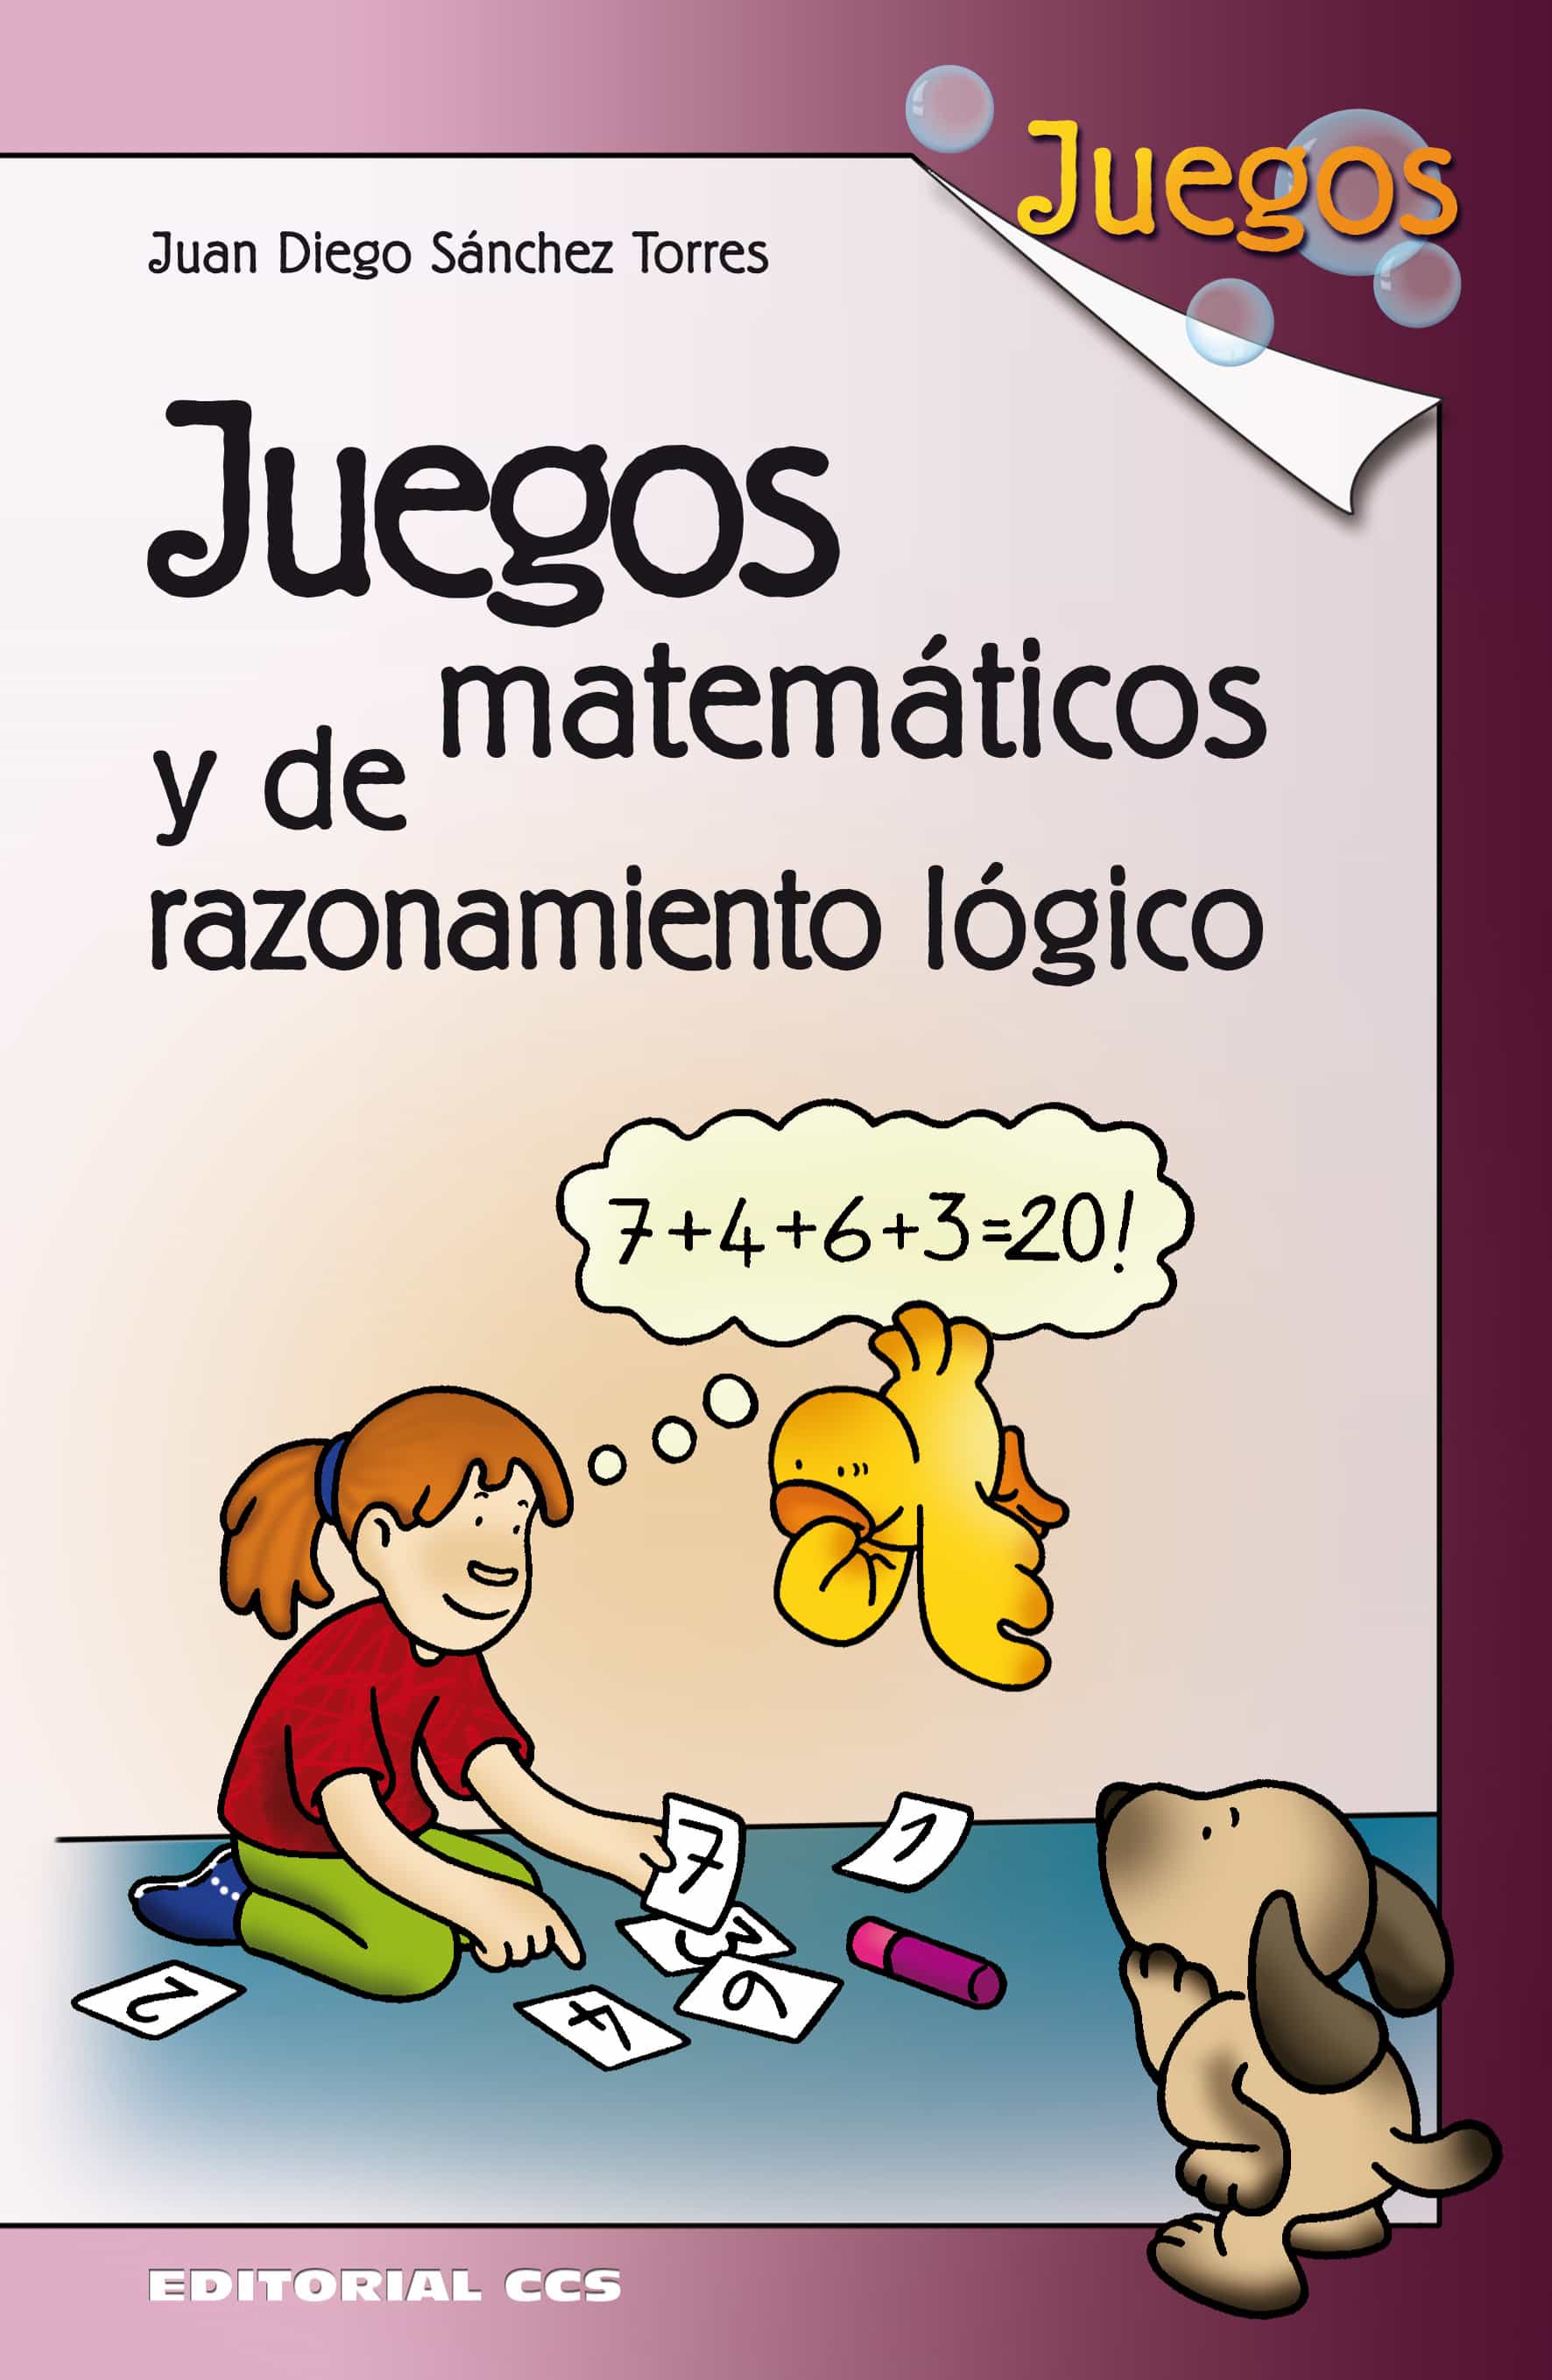 Juegos Matematicos Y De Razonamiento Logico Juan Diego Sanchez